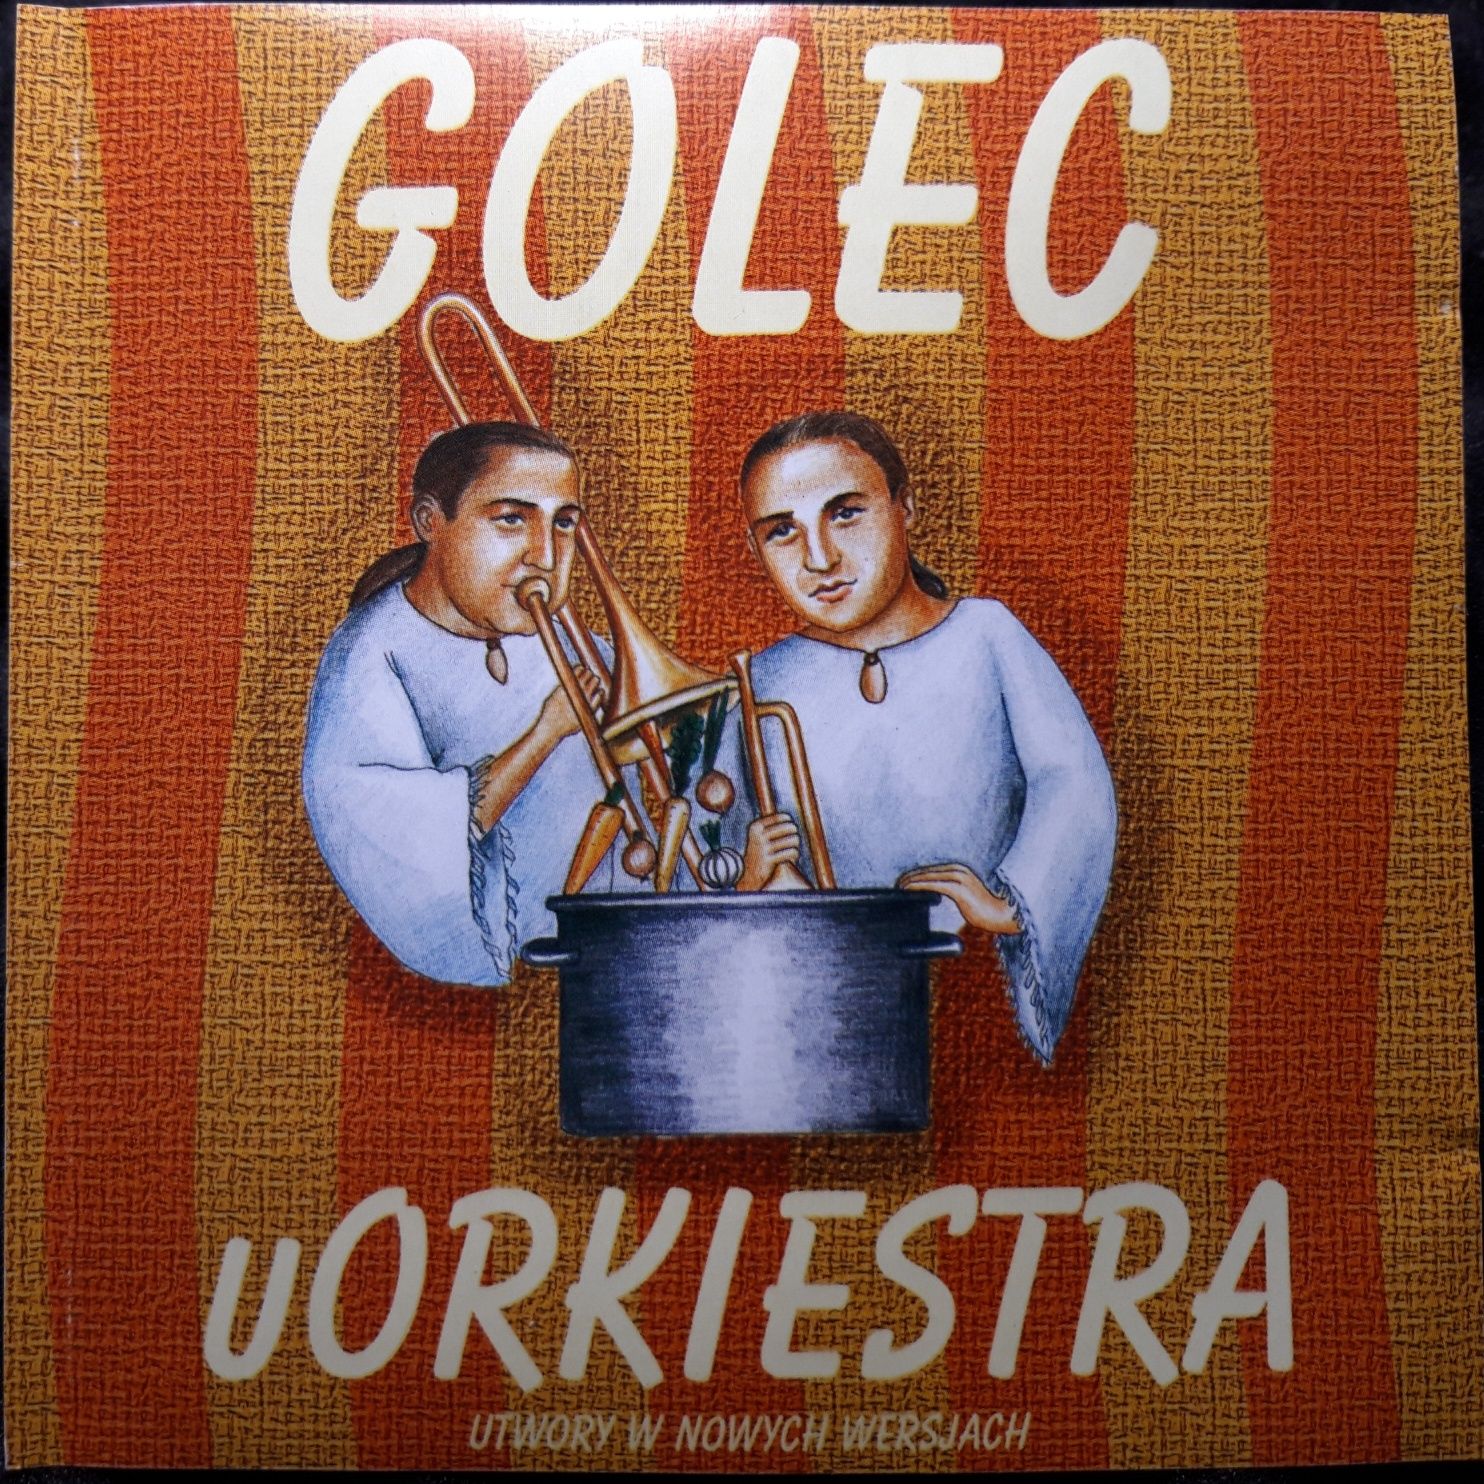 Golec uOrkiestra I inni (CD, 2001)